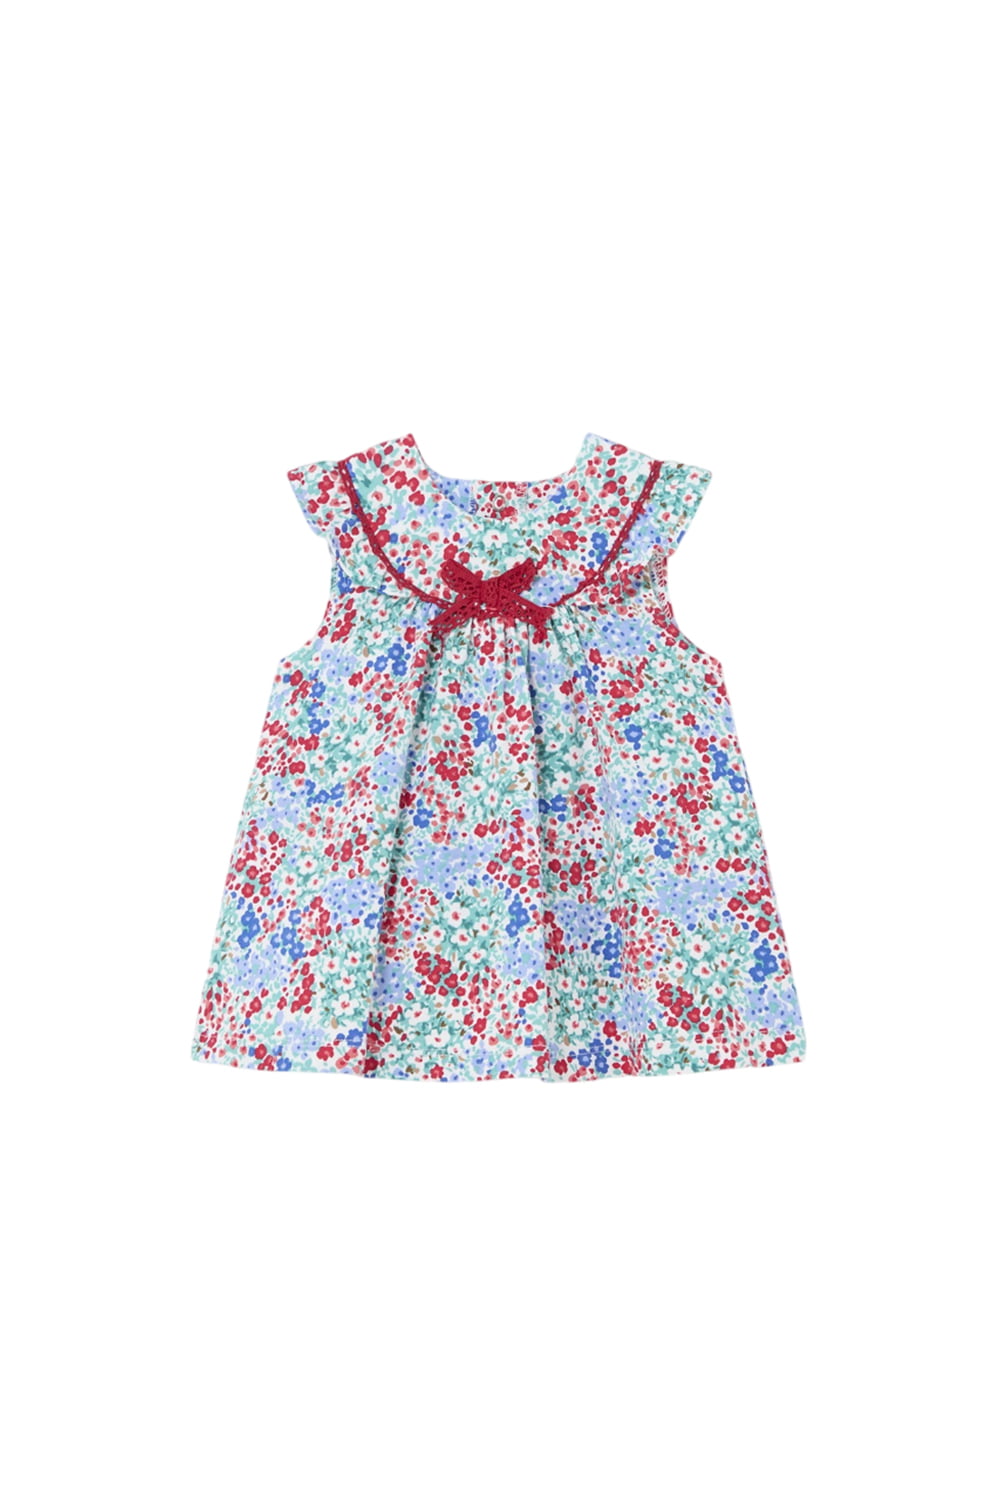 Παιδικό Φόρεμα Για Κορίτσι MAYORAL 24-01831-028 Μπλε